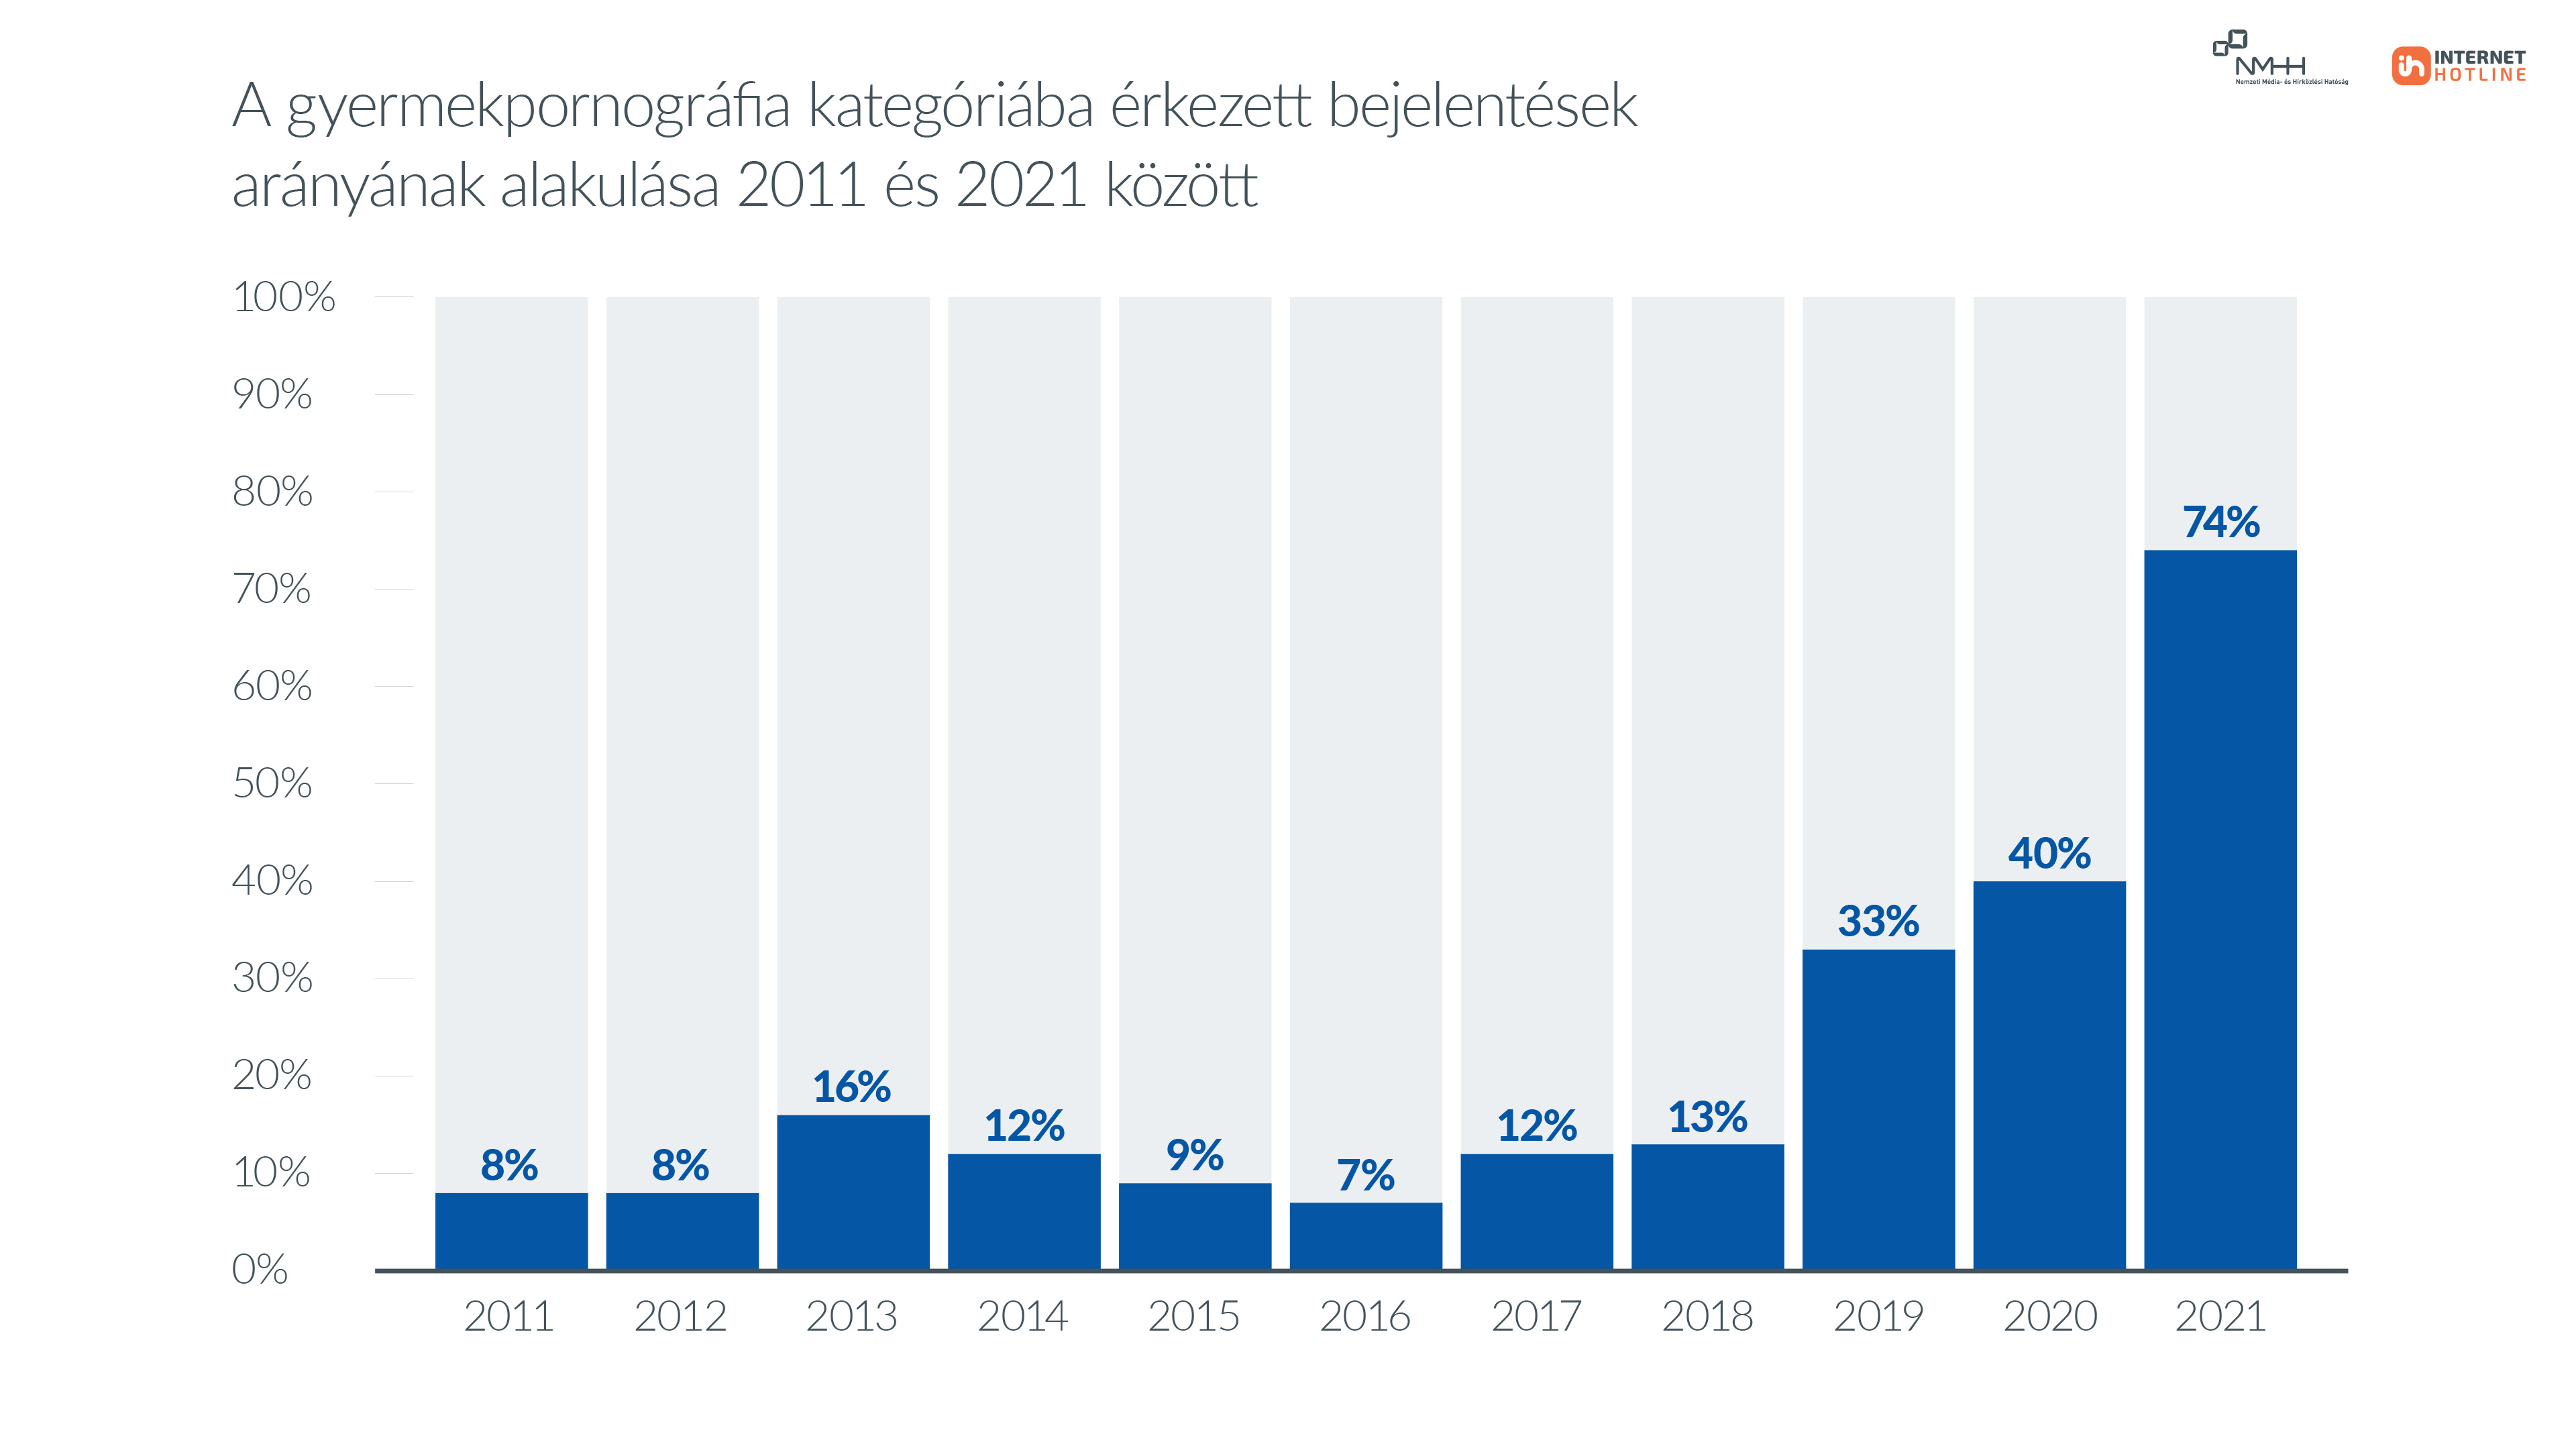 A gyermekpornográfia kategóriába érkezett bejelentések arányának alakulása 2011 és 2021 között. Az ábrázolt adatok a kép alatti táblázatban érhetők el.